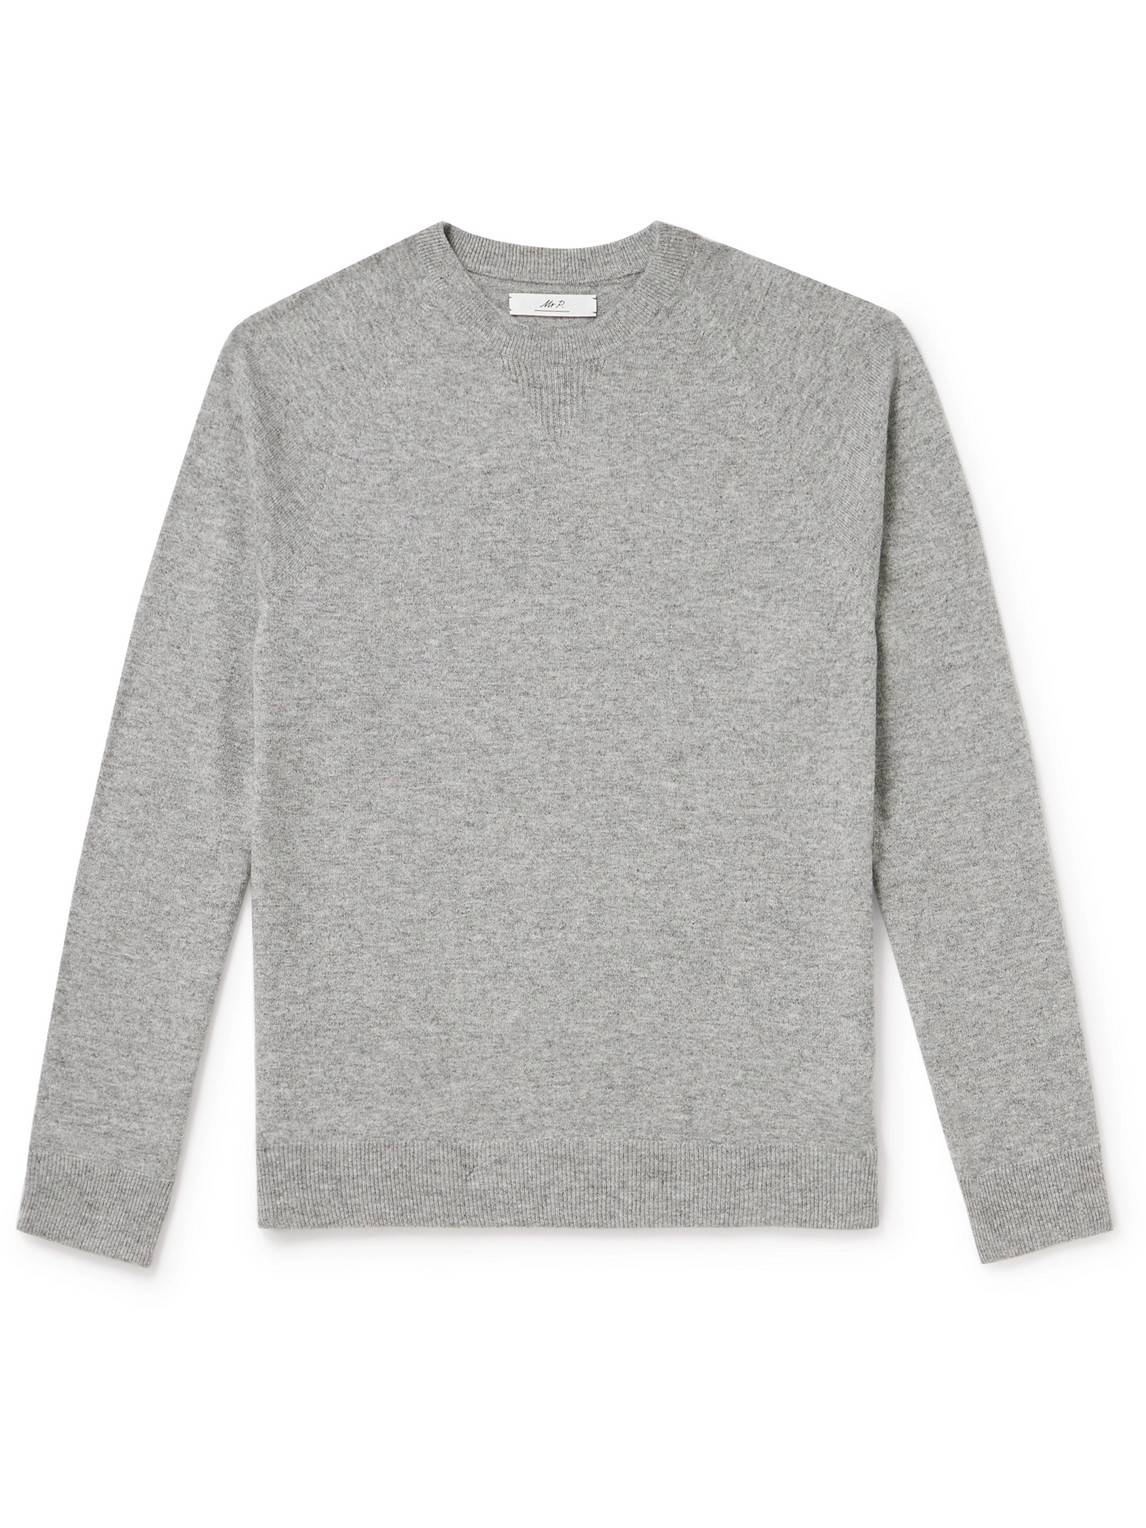 Mr P. - Wool and Cashmere-Blend Sweater - Men - Gray - M von Mr P.